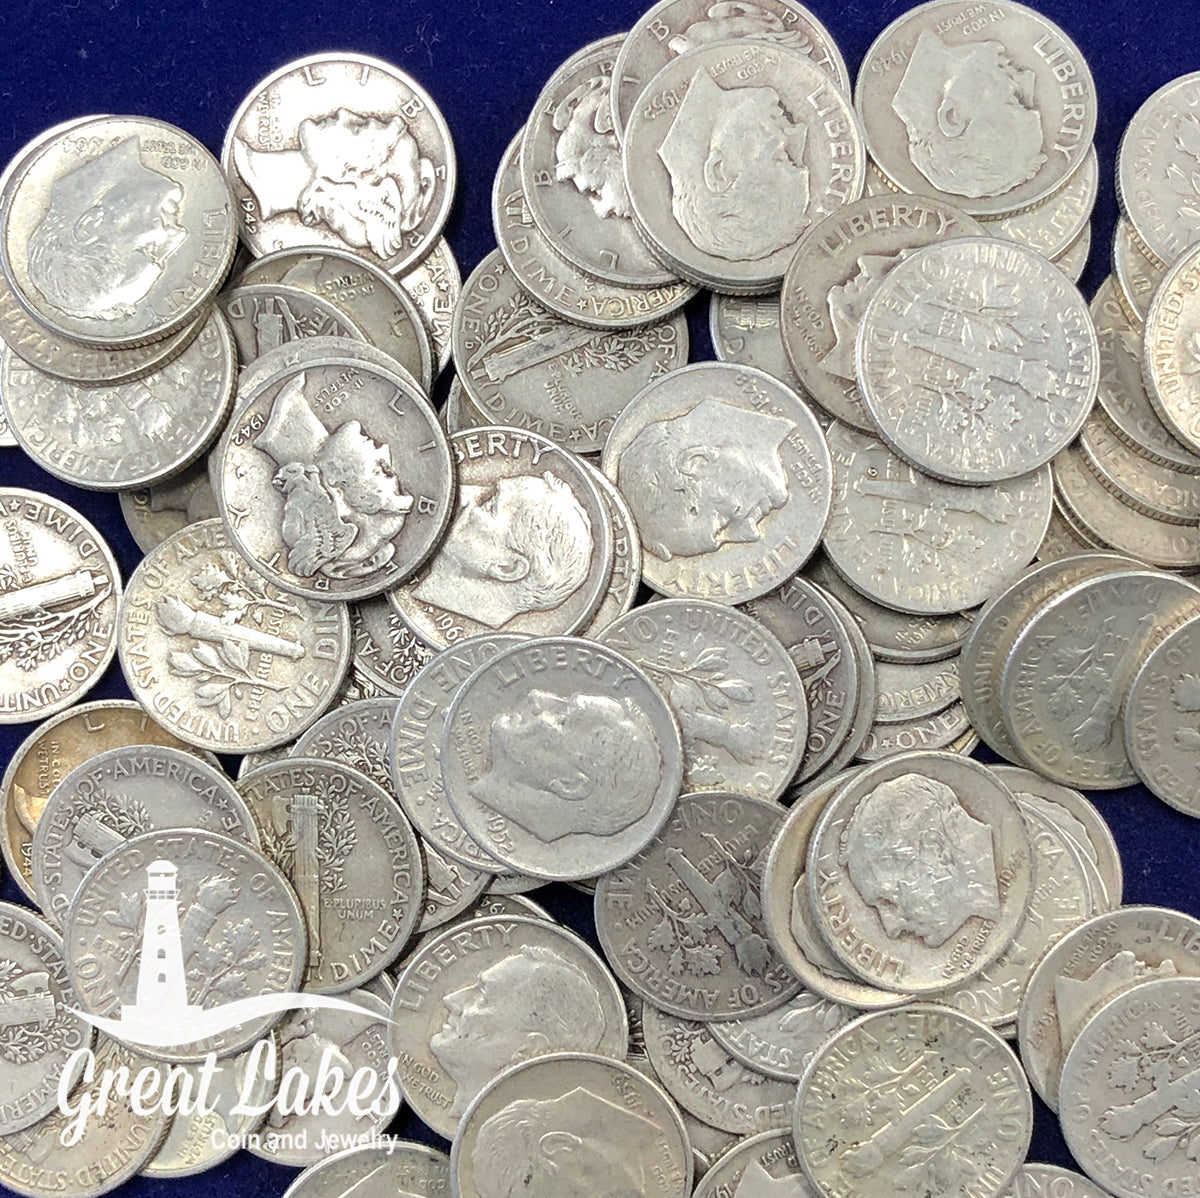 90% Silver Dimes - $1 FV (Roosevelt)